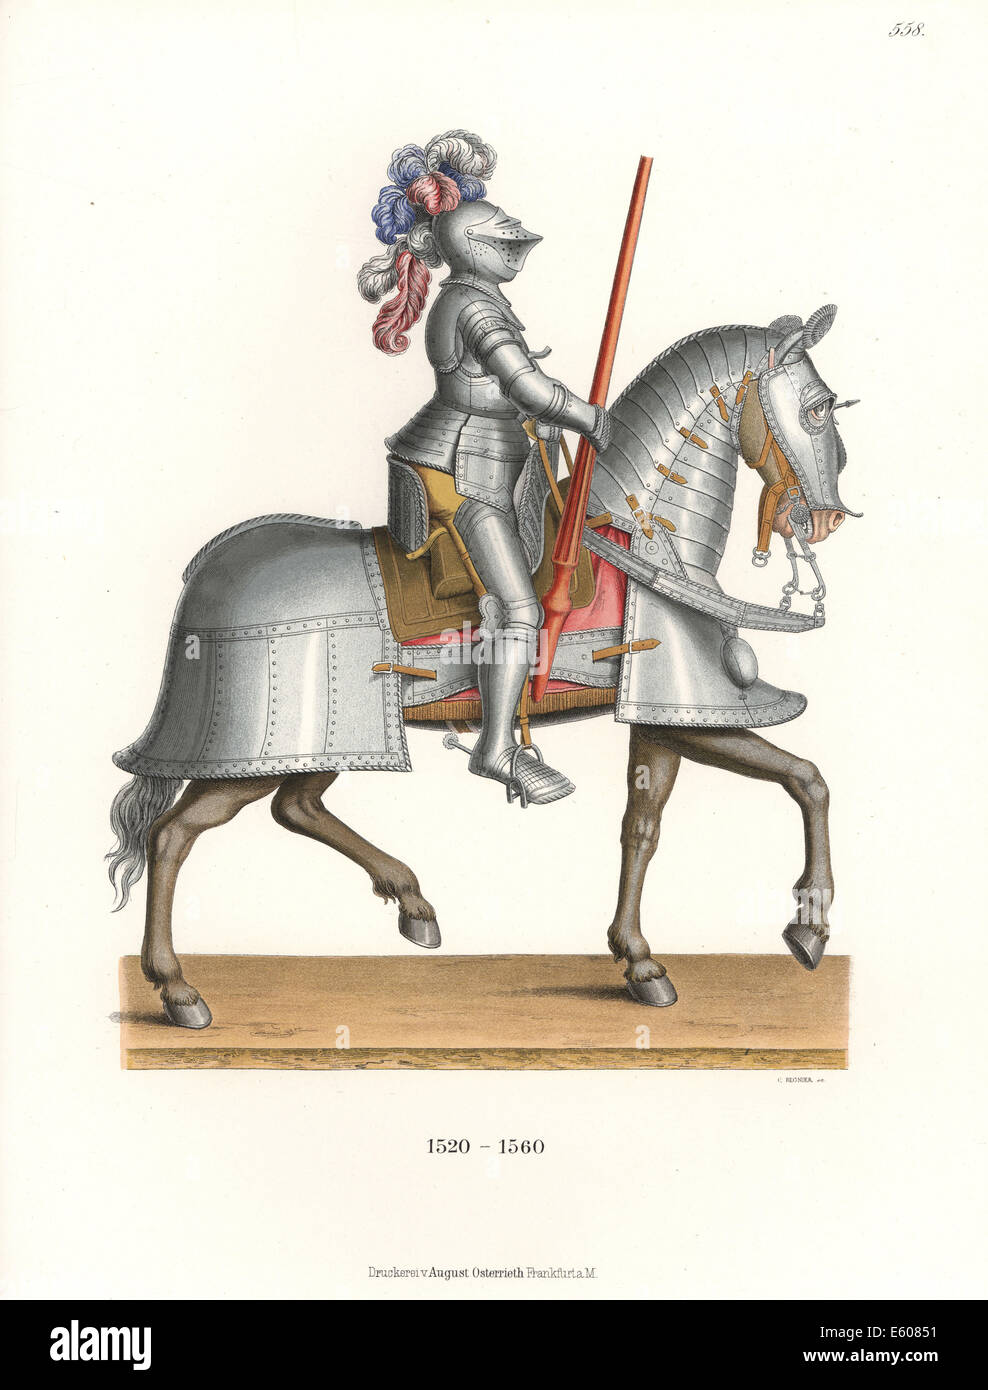 Piena battaglia corazza per cavaliere e barding per cavallo, metà del XVI secolo. Foto Stock